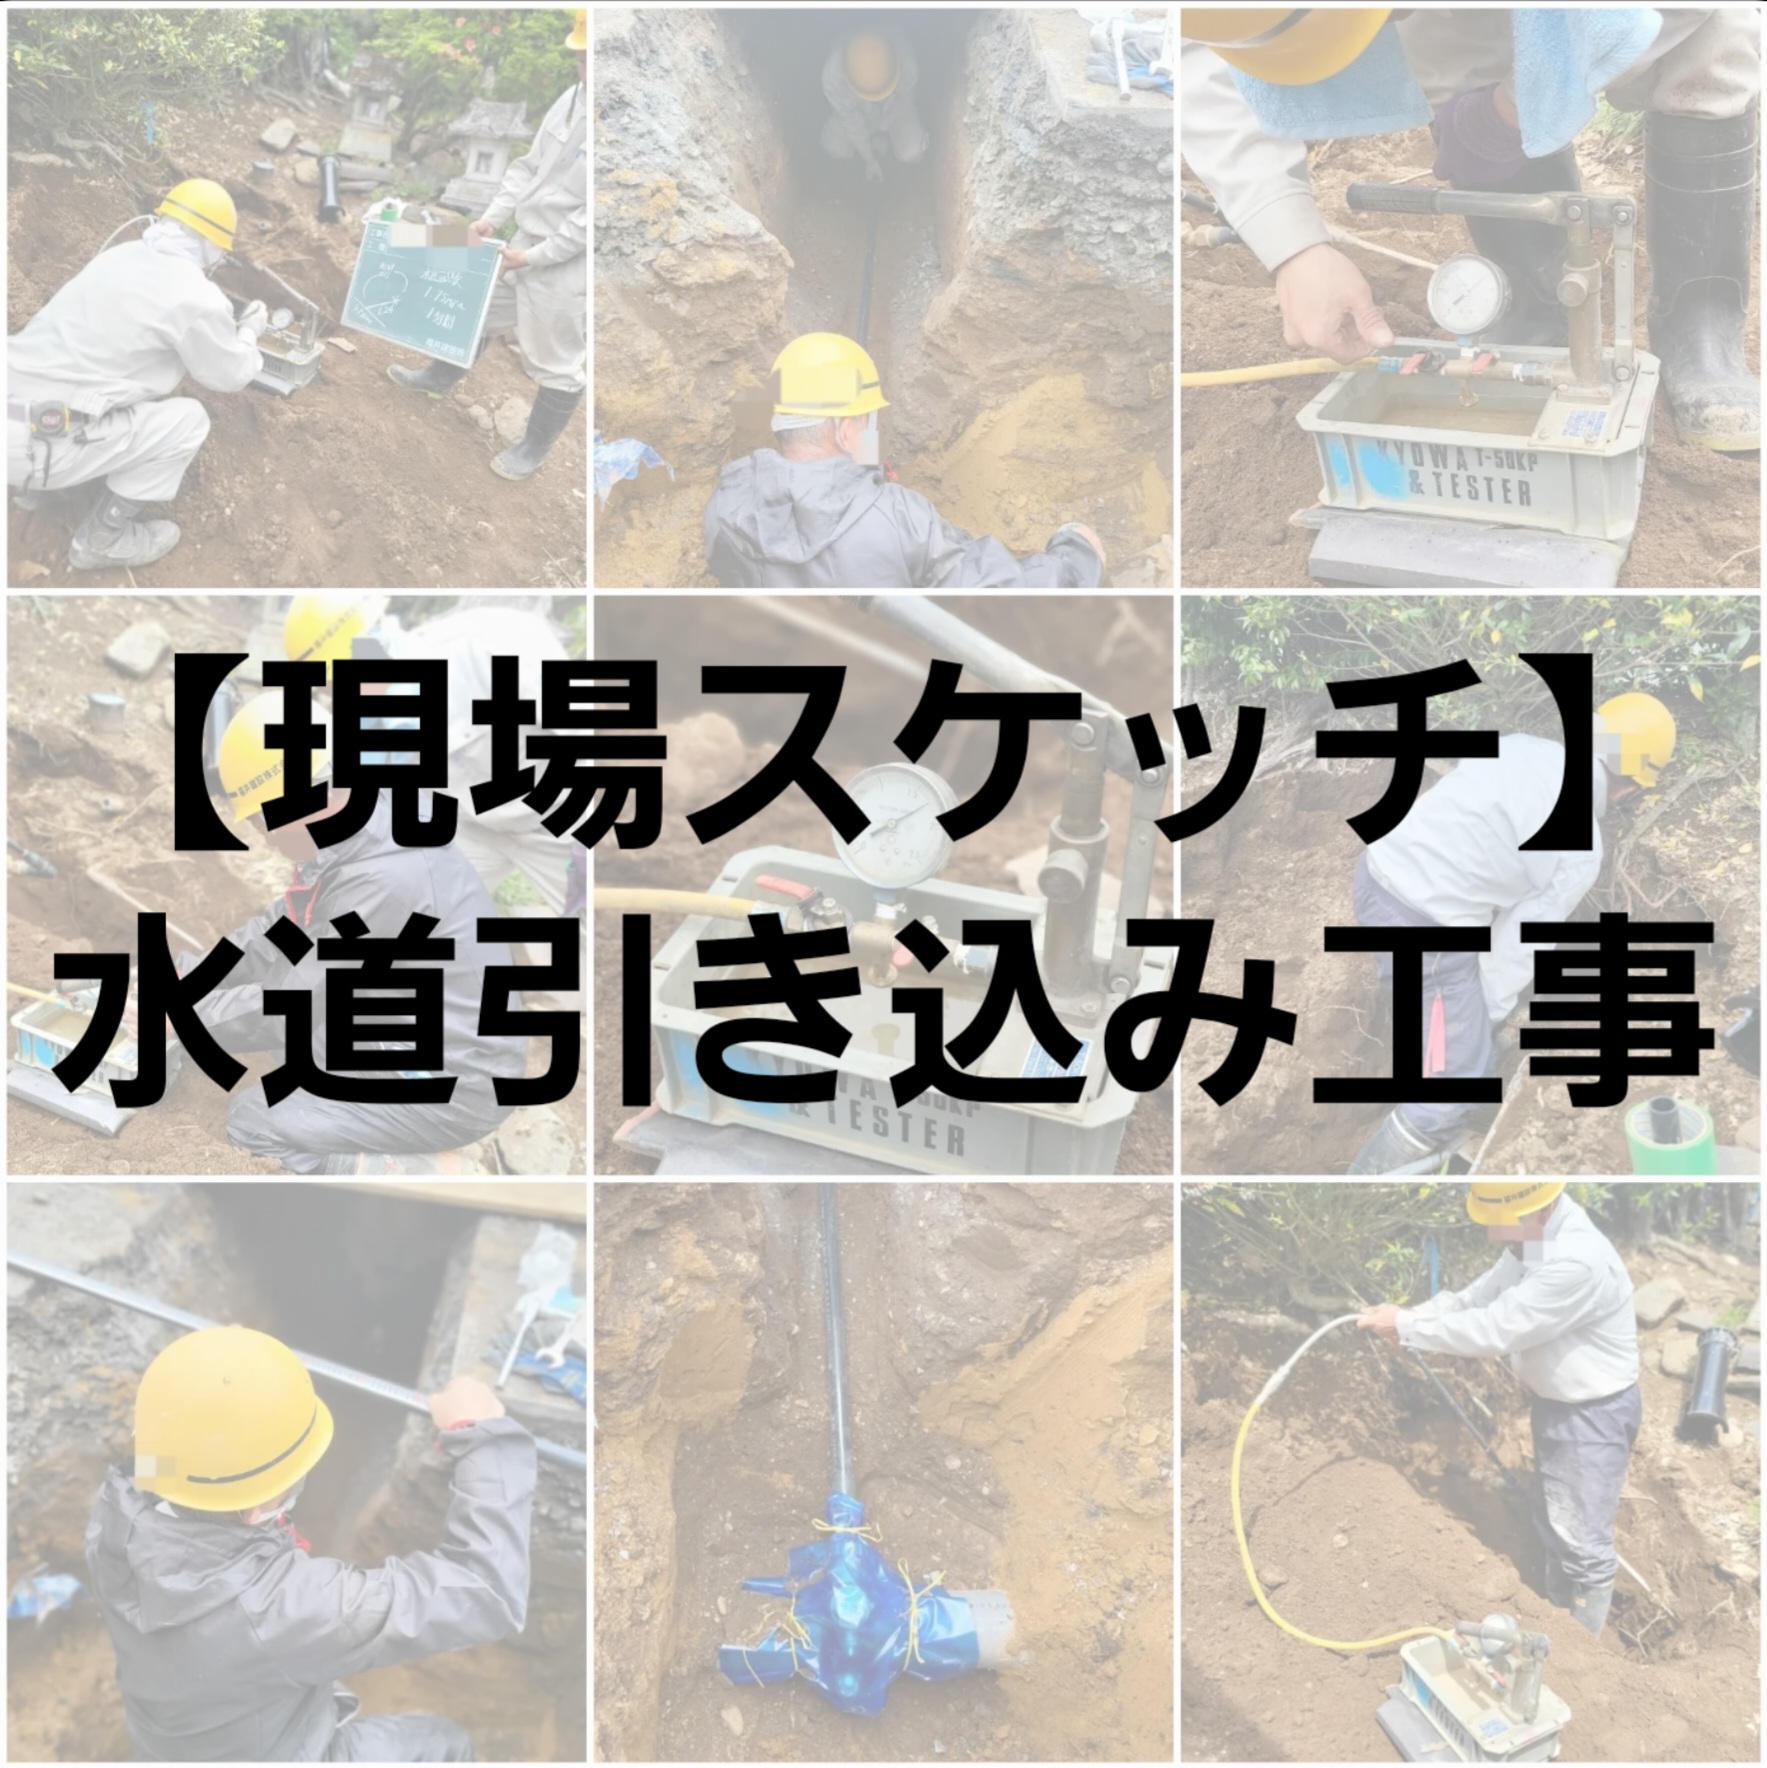 【現場スケッチ】水道引き込み工事